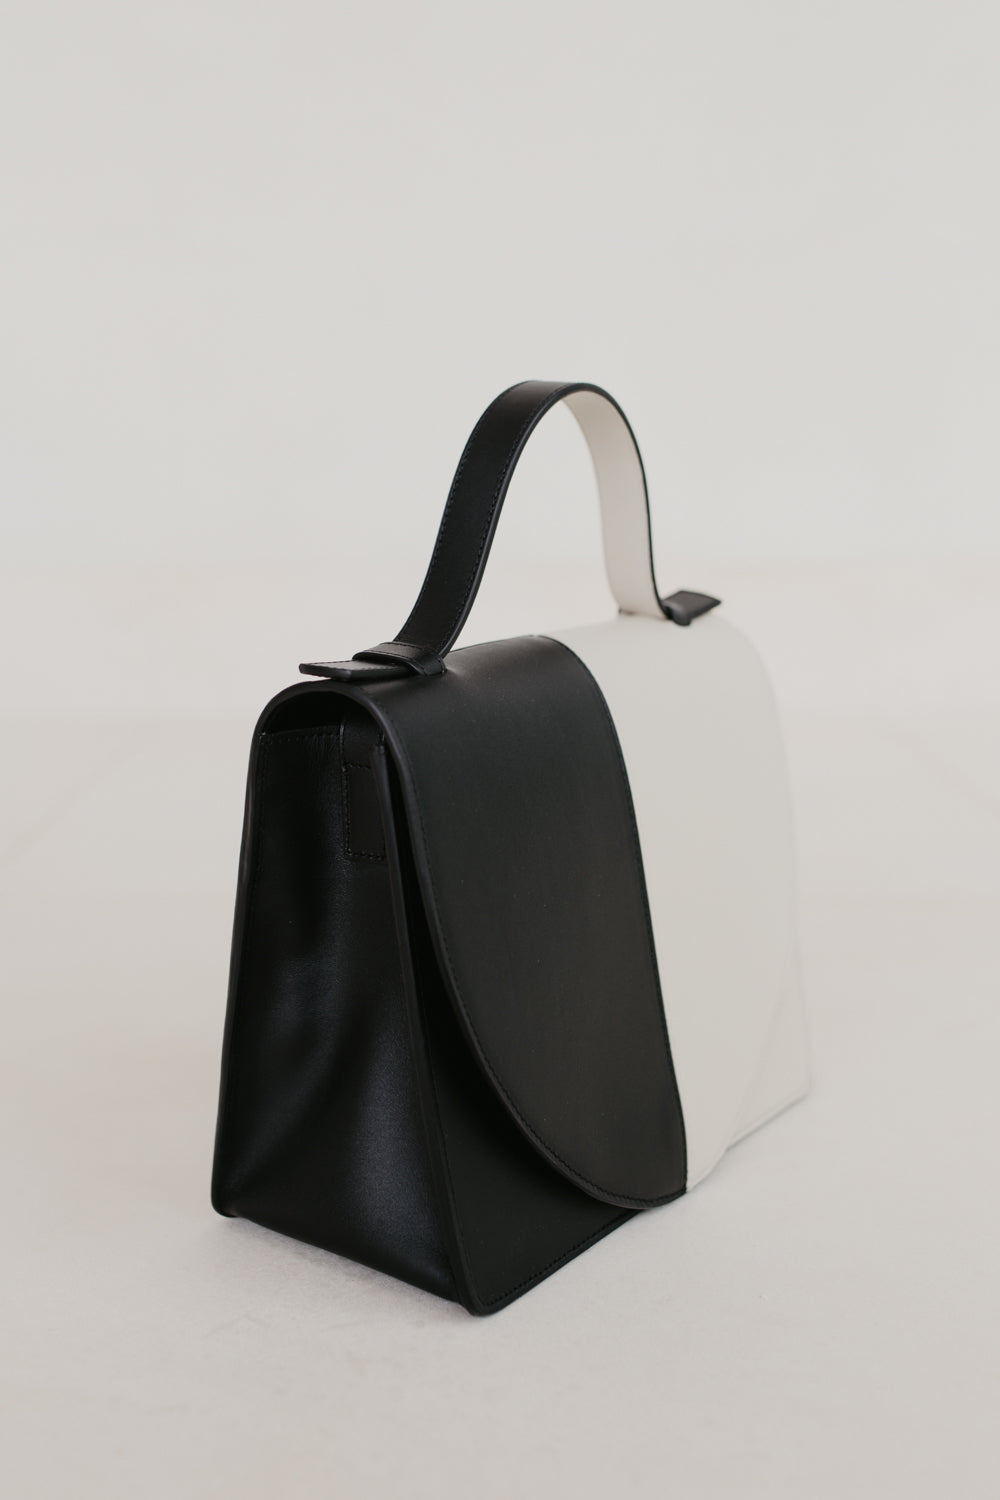 Mini Briefcase | Demi Black & White